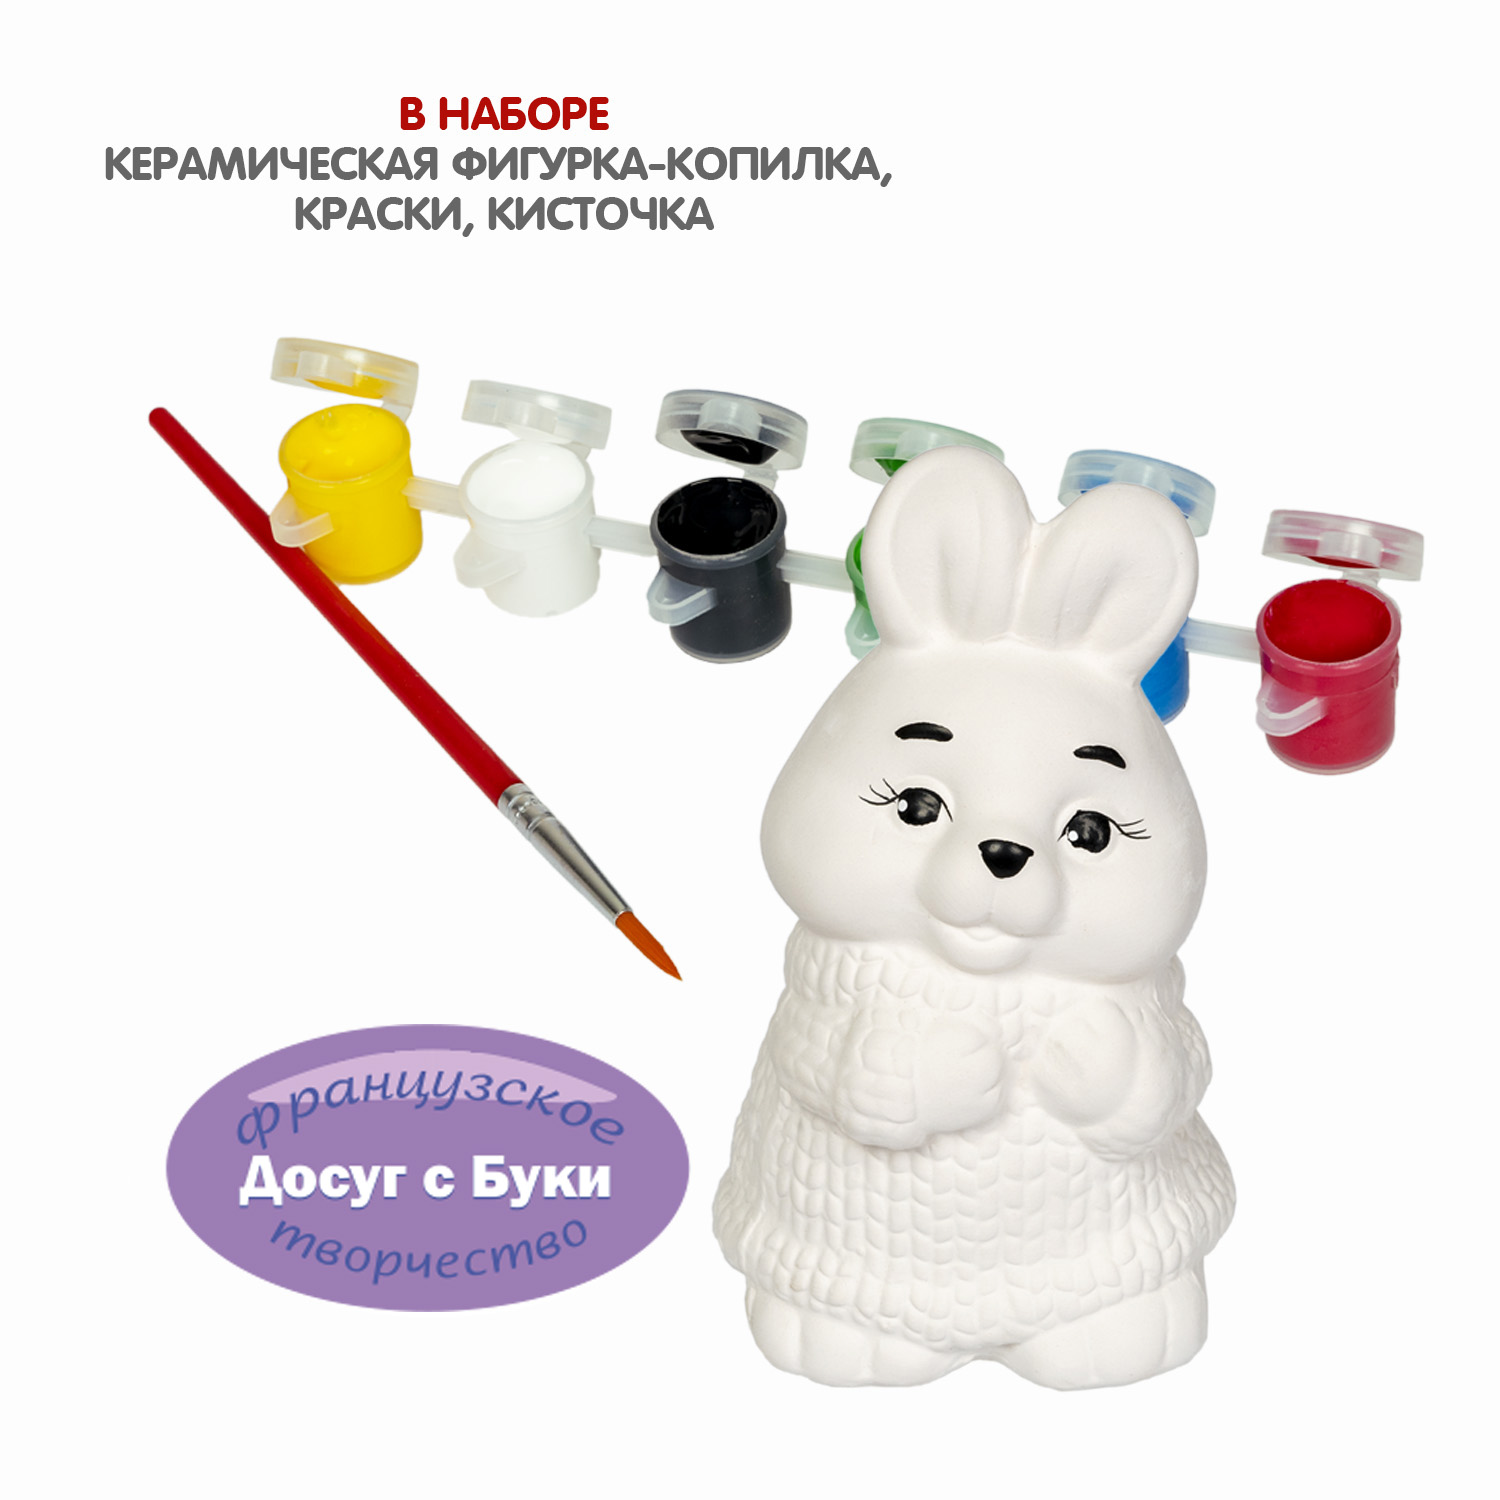 Набор для творчества BONDIBON Копилка подарок Гипсовый кролик серия Досуг с Буки - фото 2